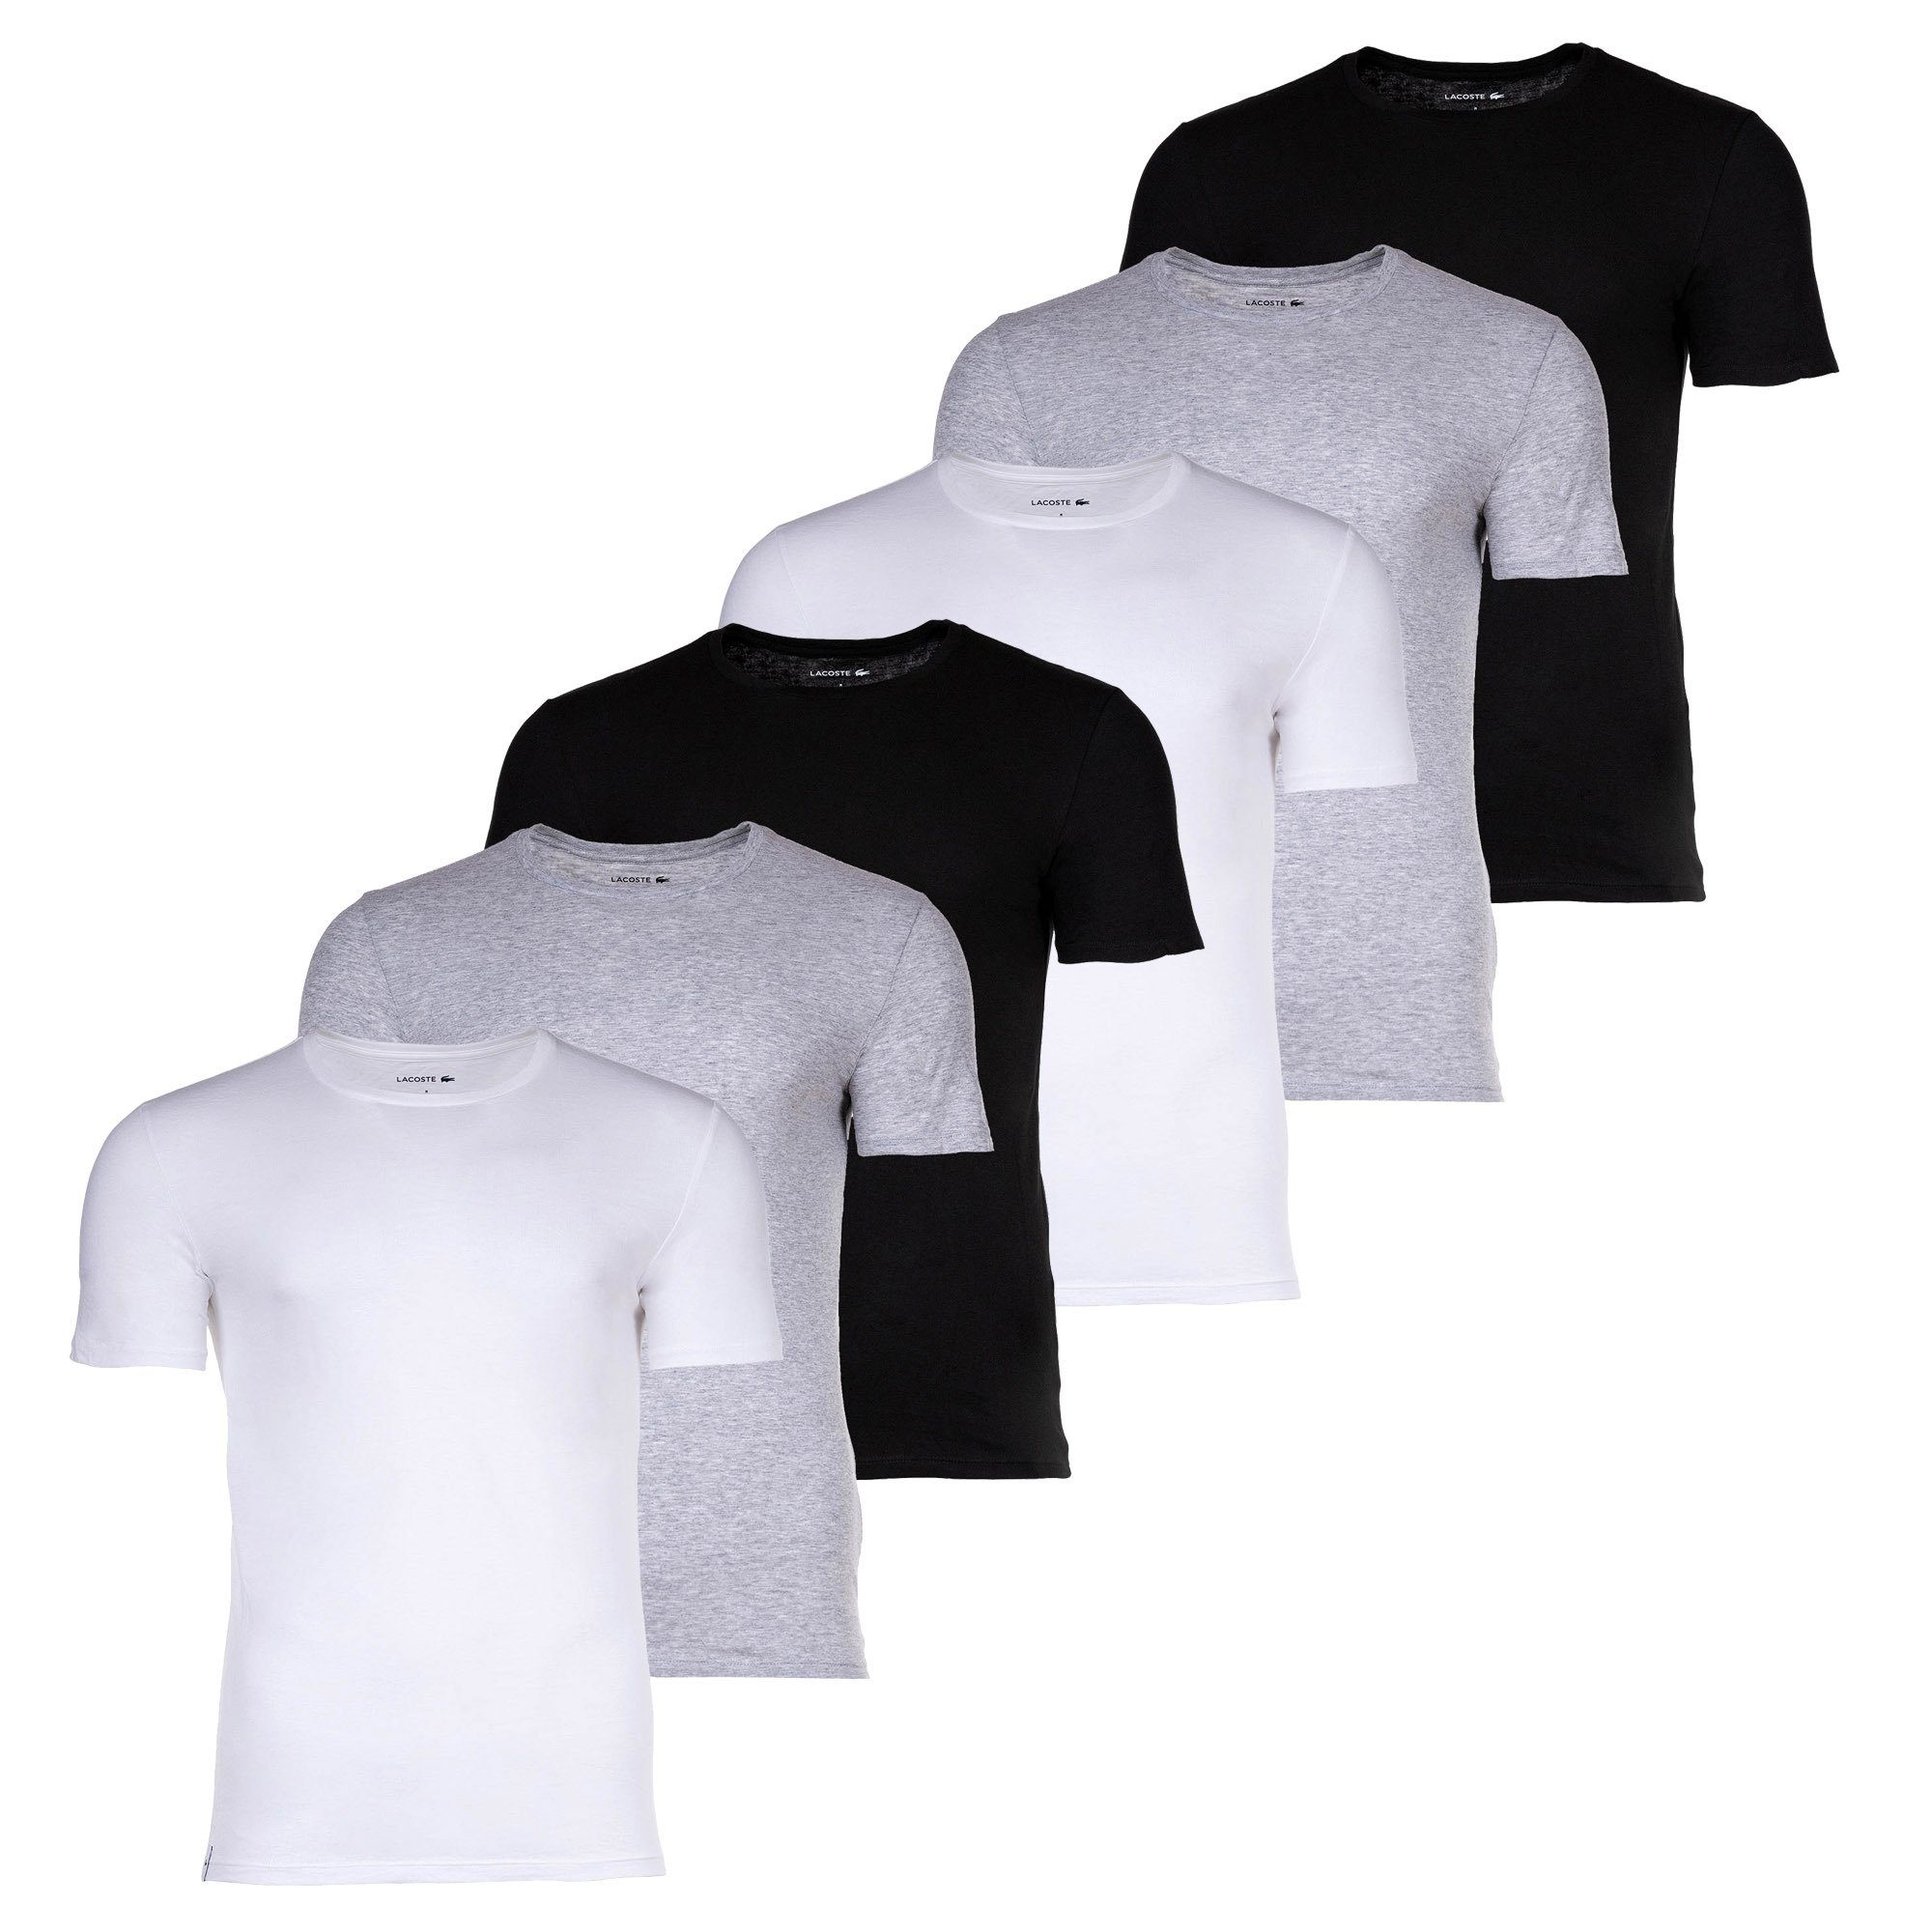 Lacoste T-Shirt - Essentials, Pack 6er Rundhals Weiß/Grau/Schwarz T-Shirts, Herren